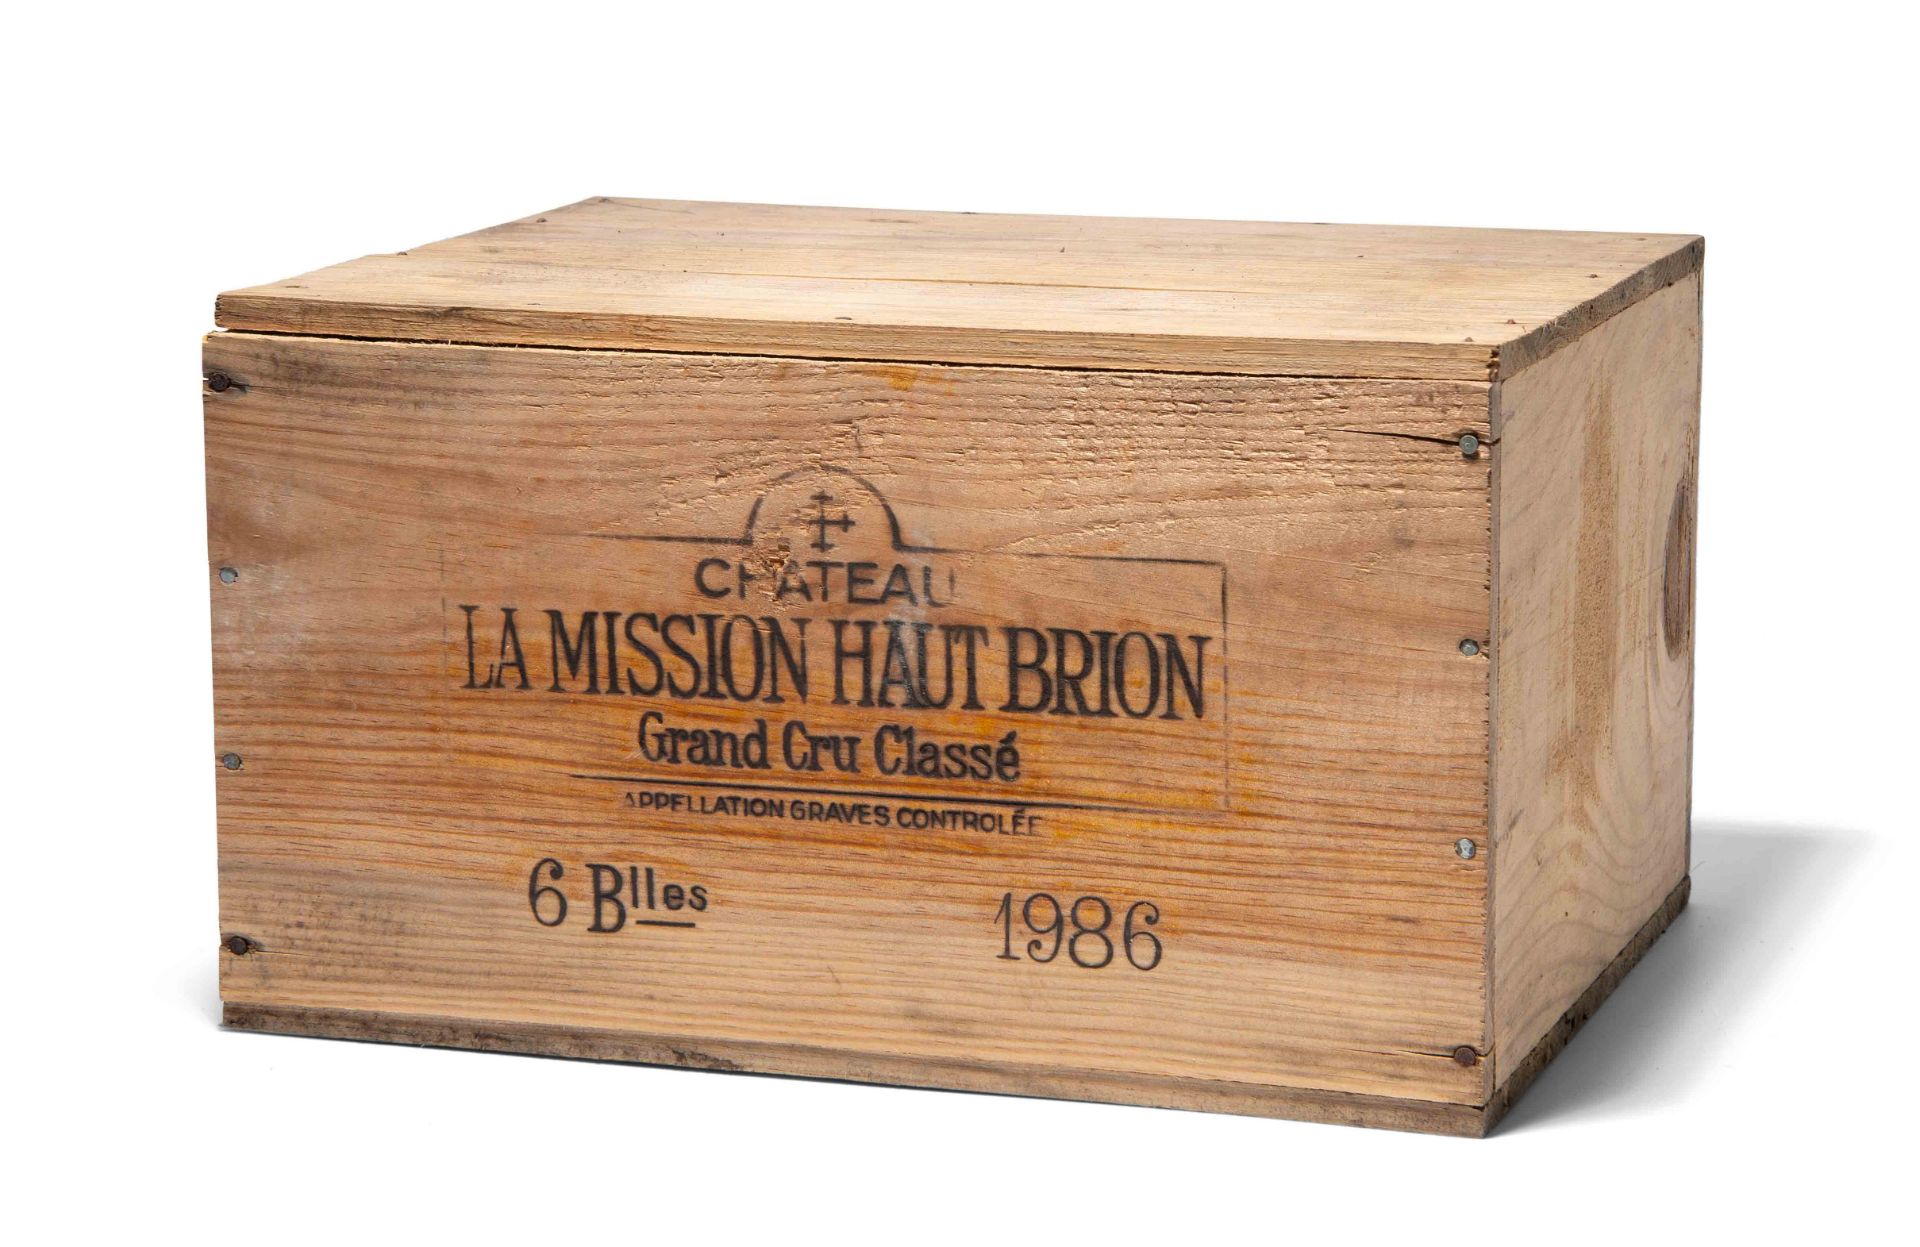 Chateau La Mission Haut Brion - Image 2 of 2